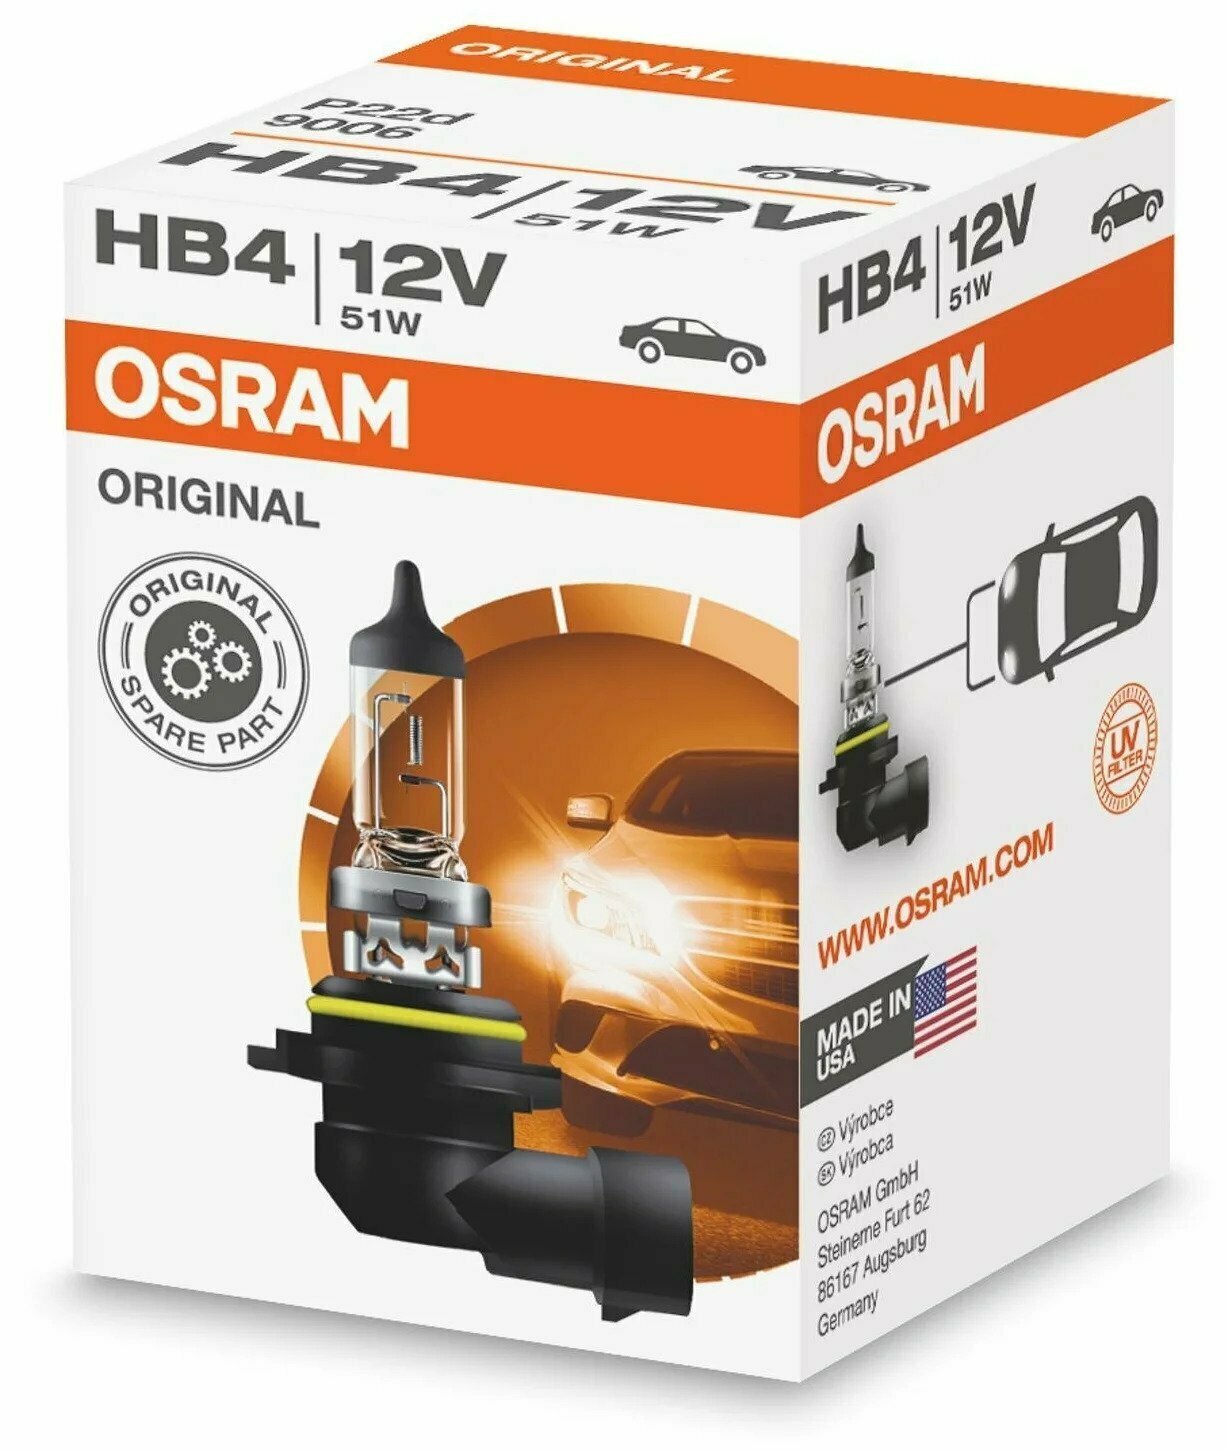 (Osram) Лампа HB 4 9006 галогенная 51W 12V (10шт)